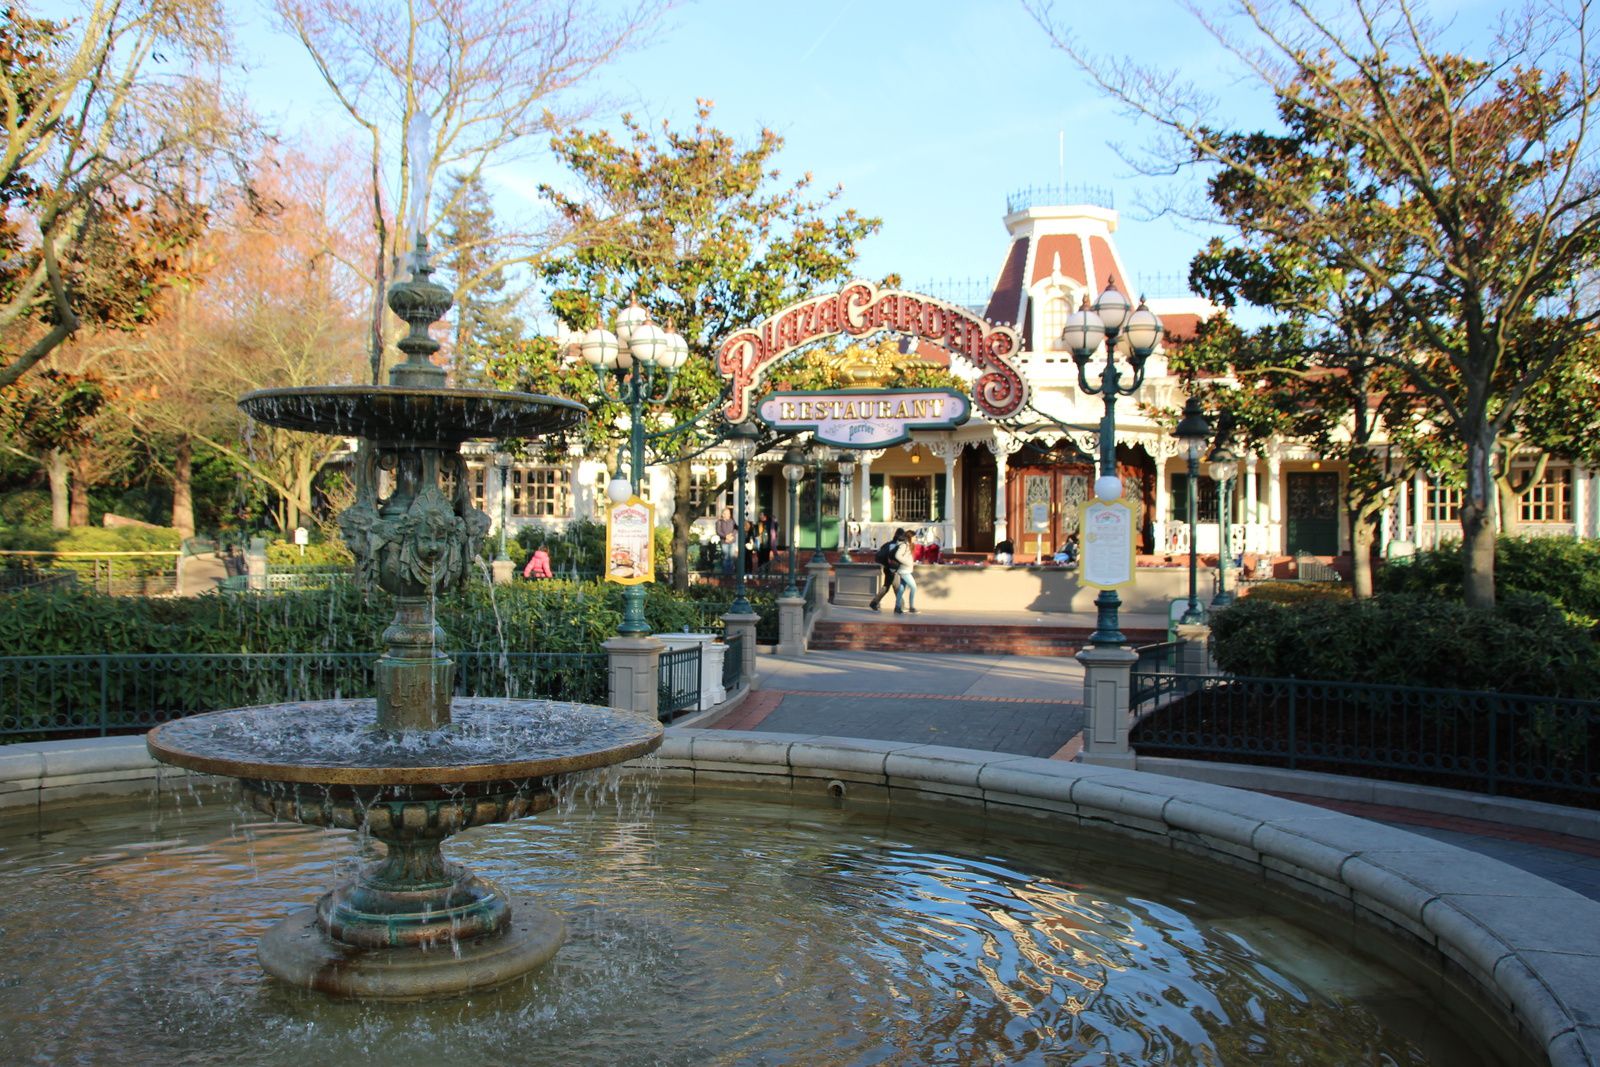 Le restaurant Plaza Gardens à Disneyland Paris - Les expériences de